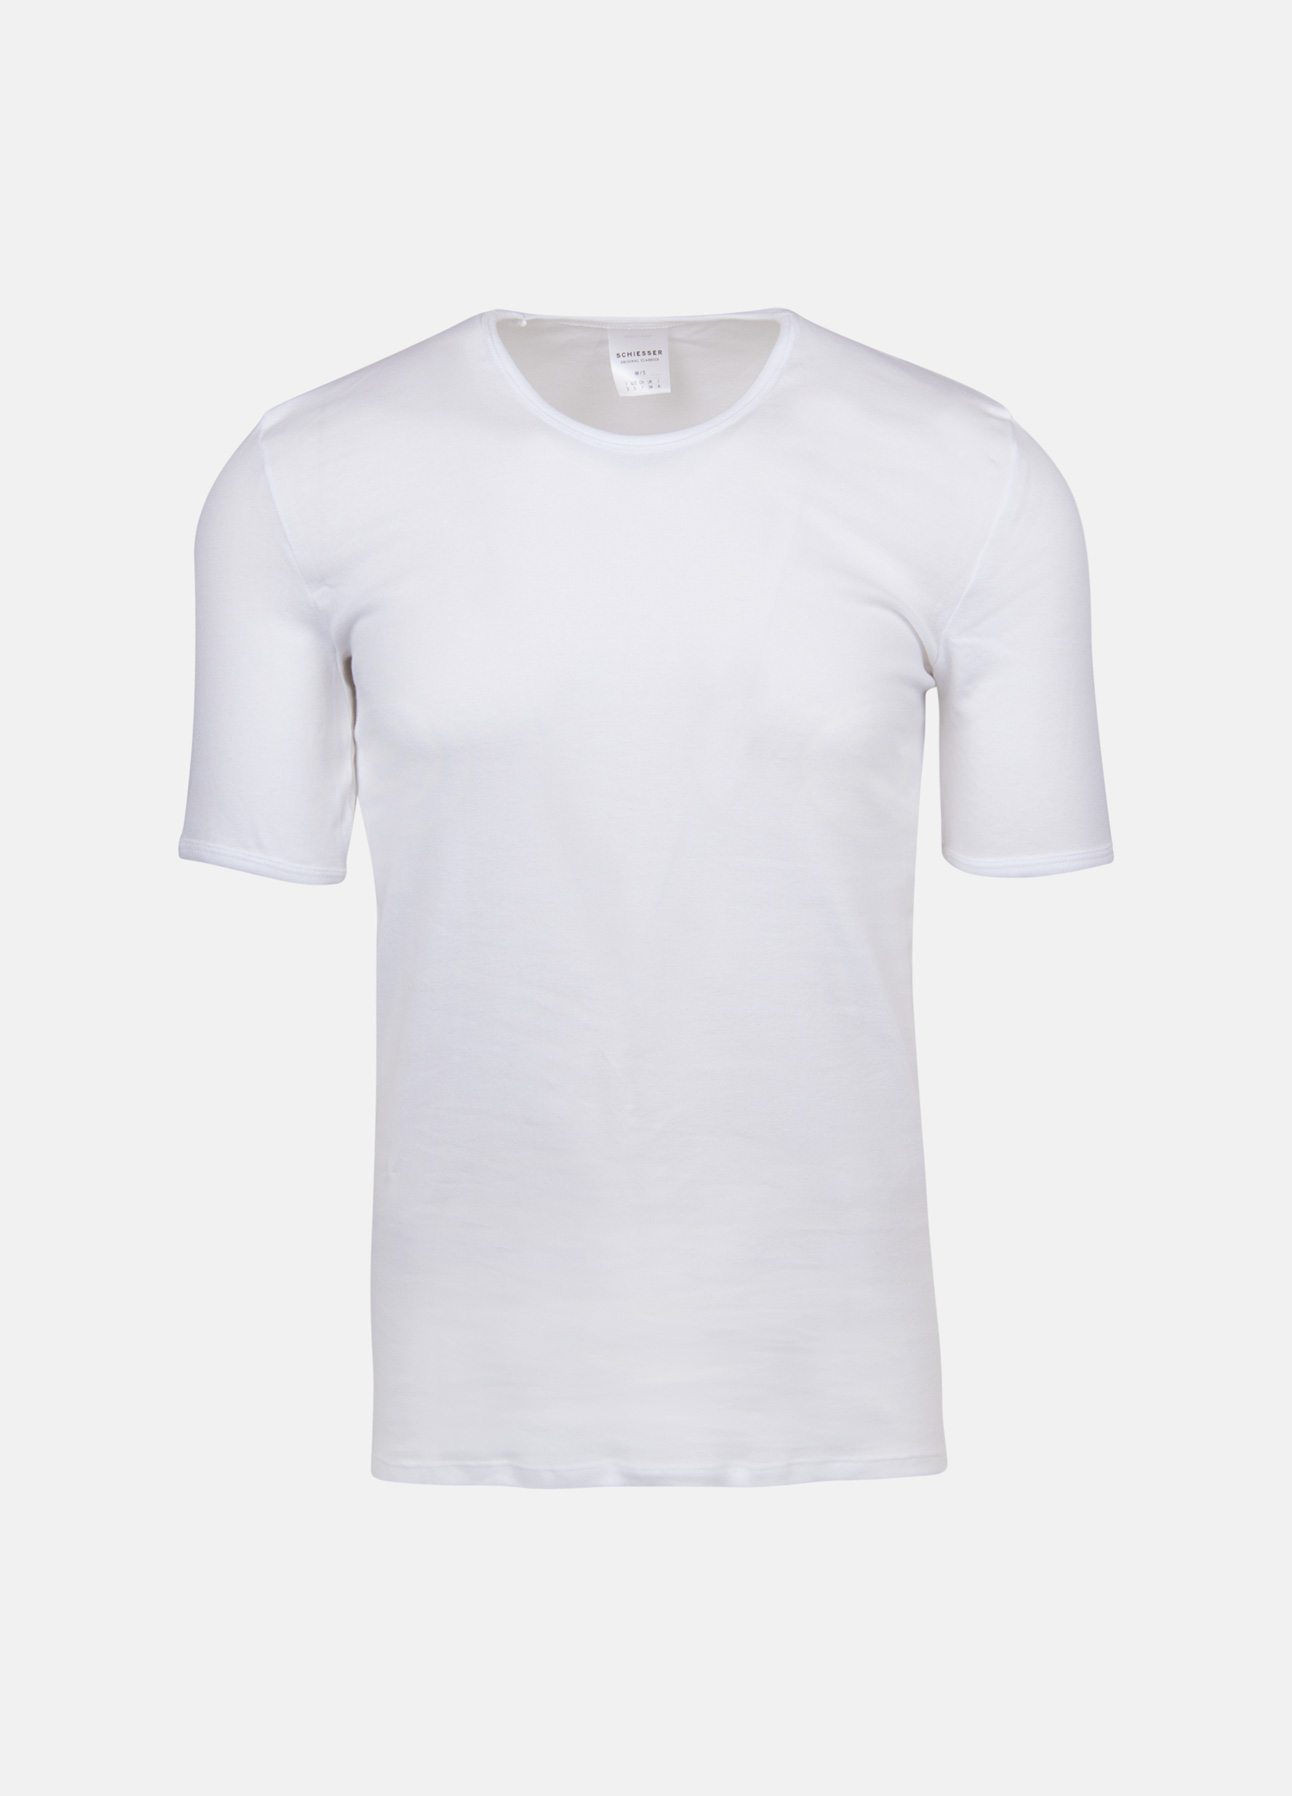 Hvid t-shirt fra Schiesser